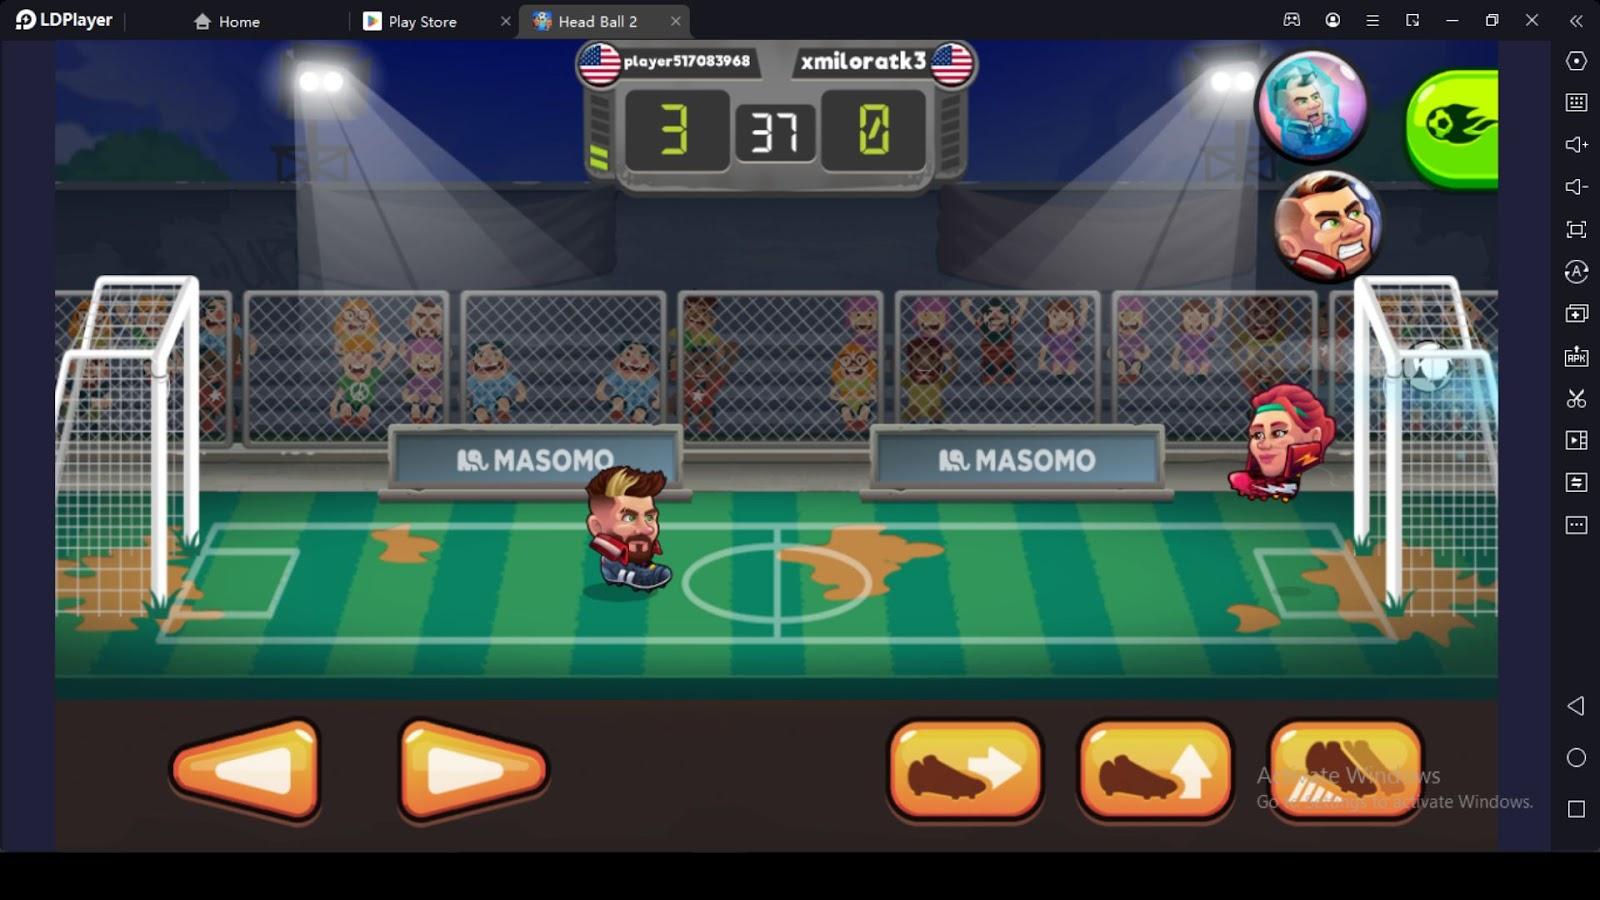 Head Ball 2 - Online Soccer Beginner Guide for Gameplay